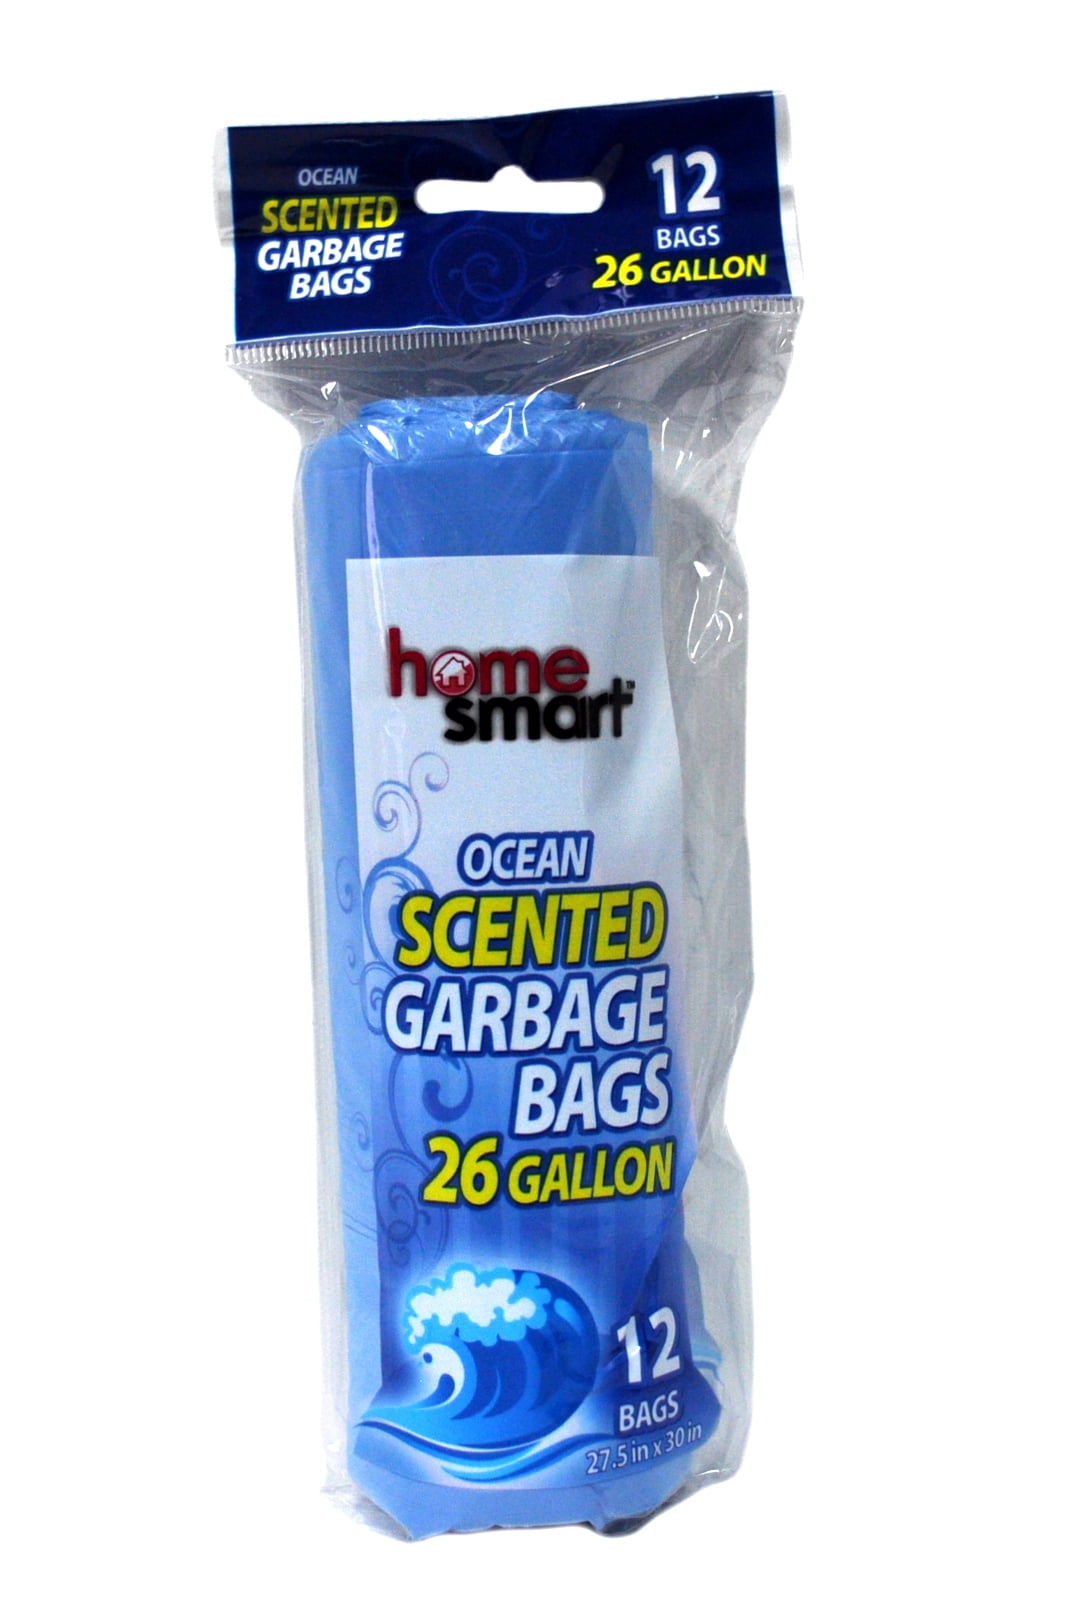 HomeSmart Scented Garbage Bags - Ocean